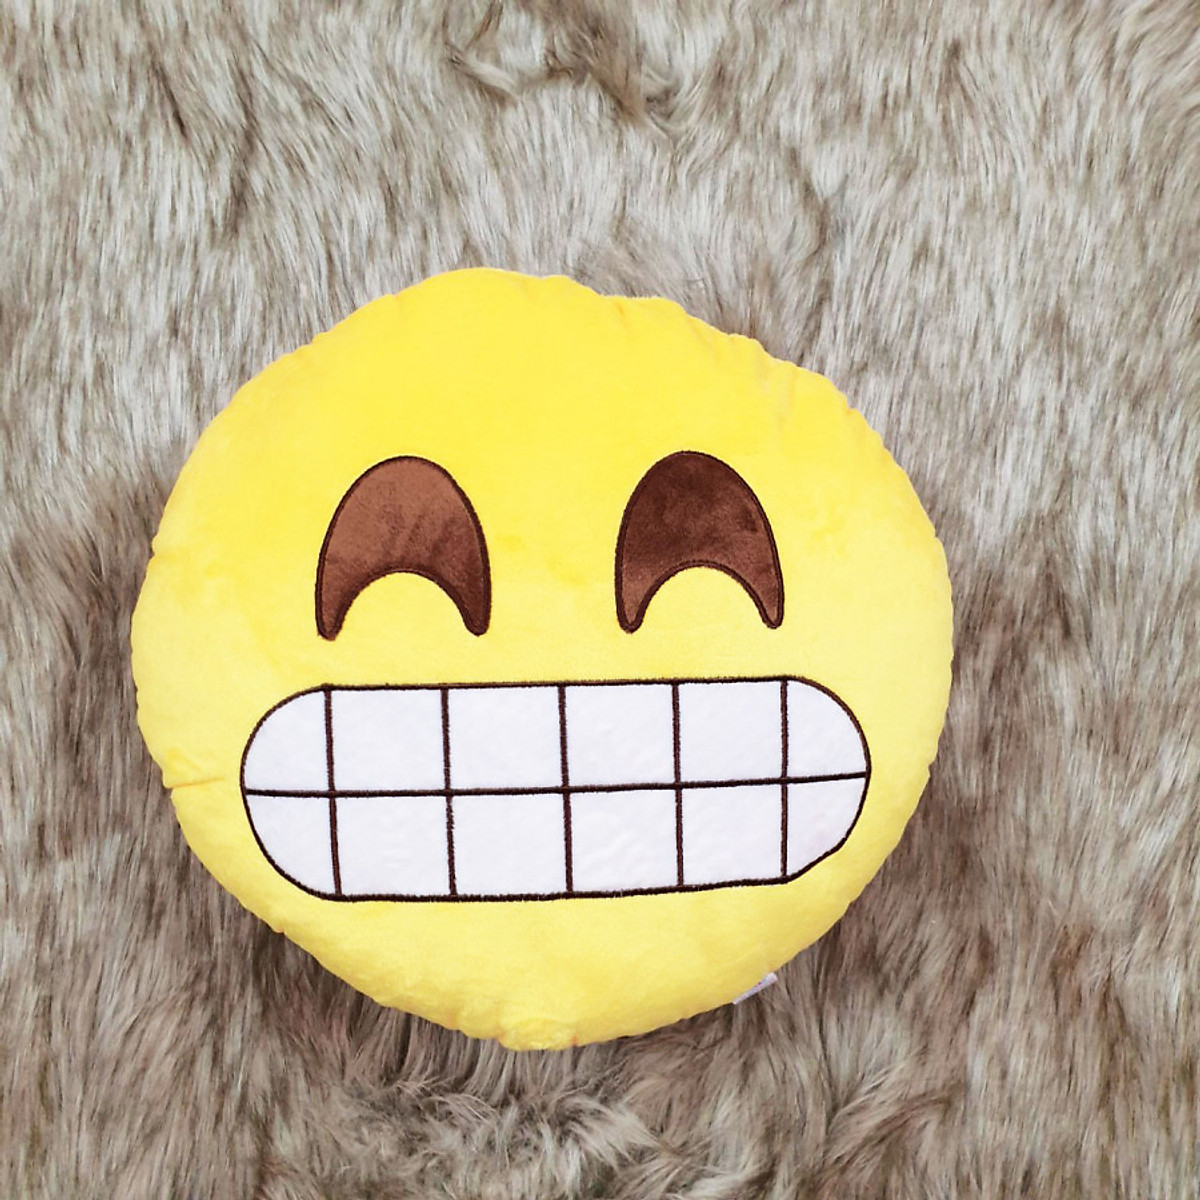 Giải mã ý nghĩa 50 emoji biểu tượng khuôn mặt chúng ta thường dùng hàng ngày